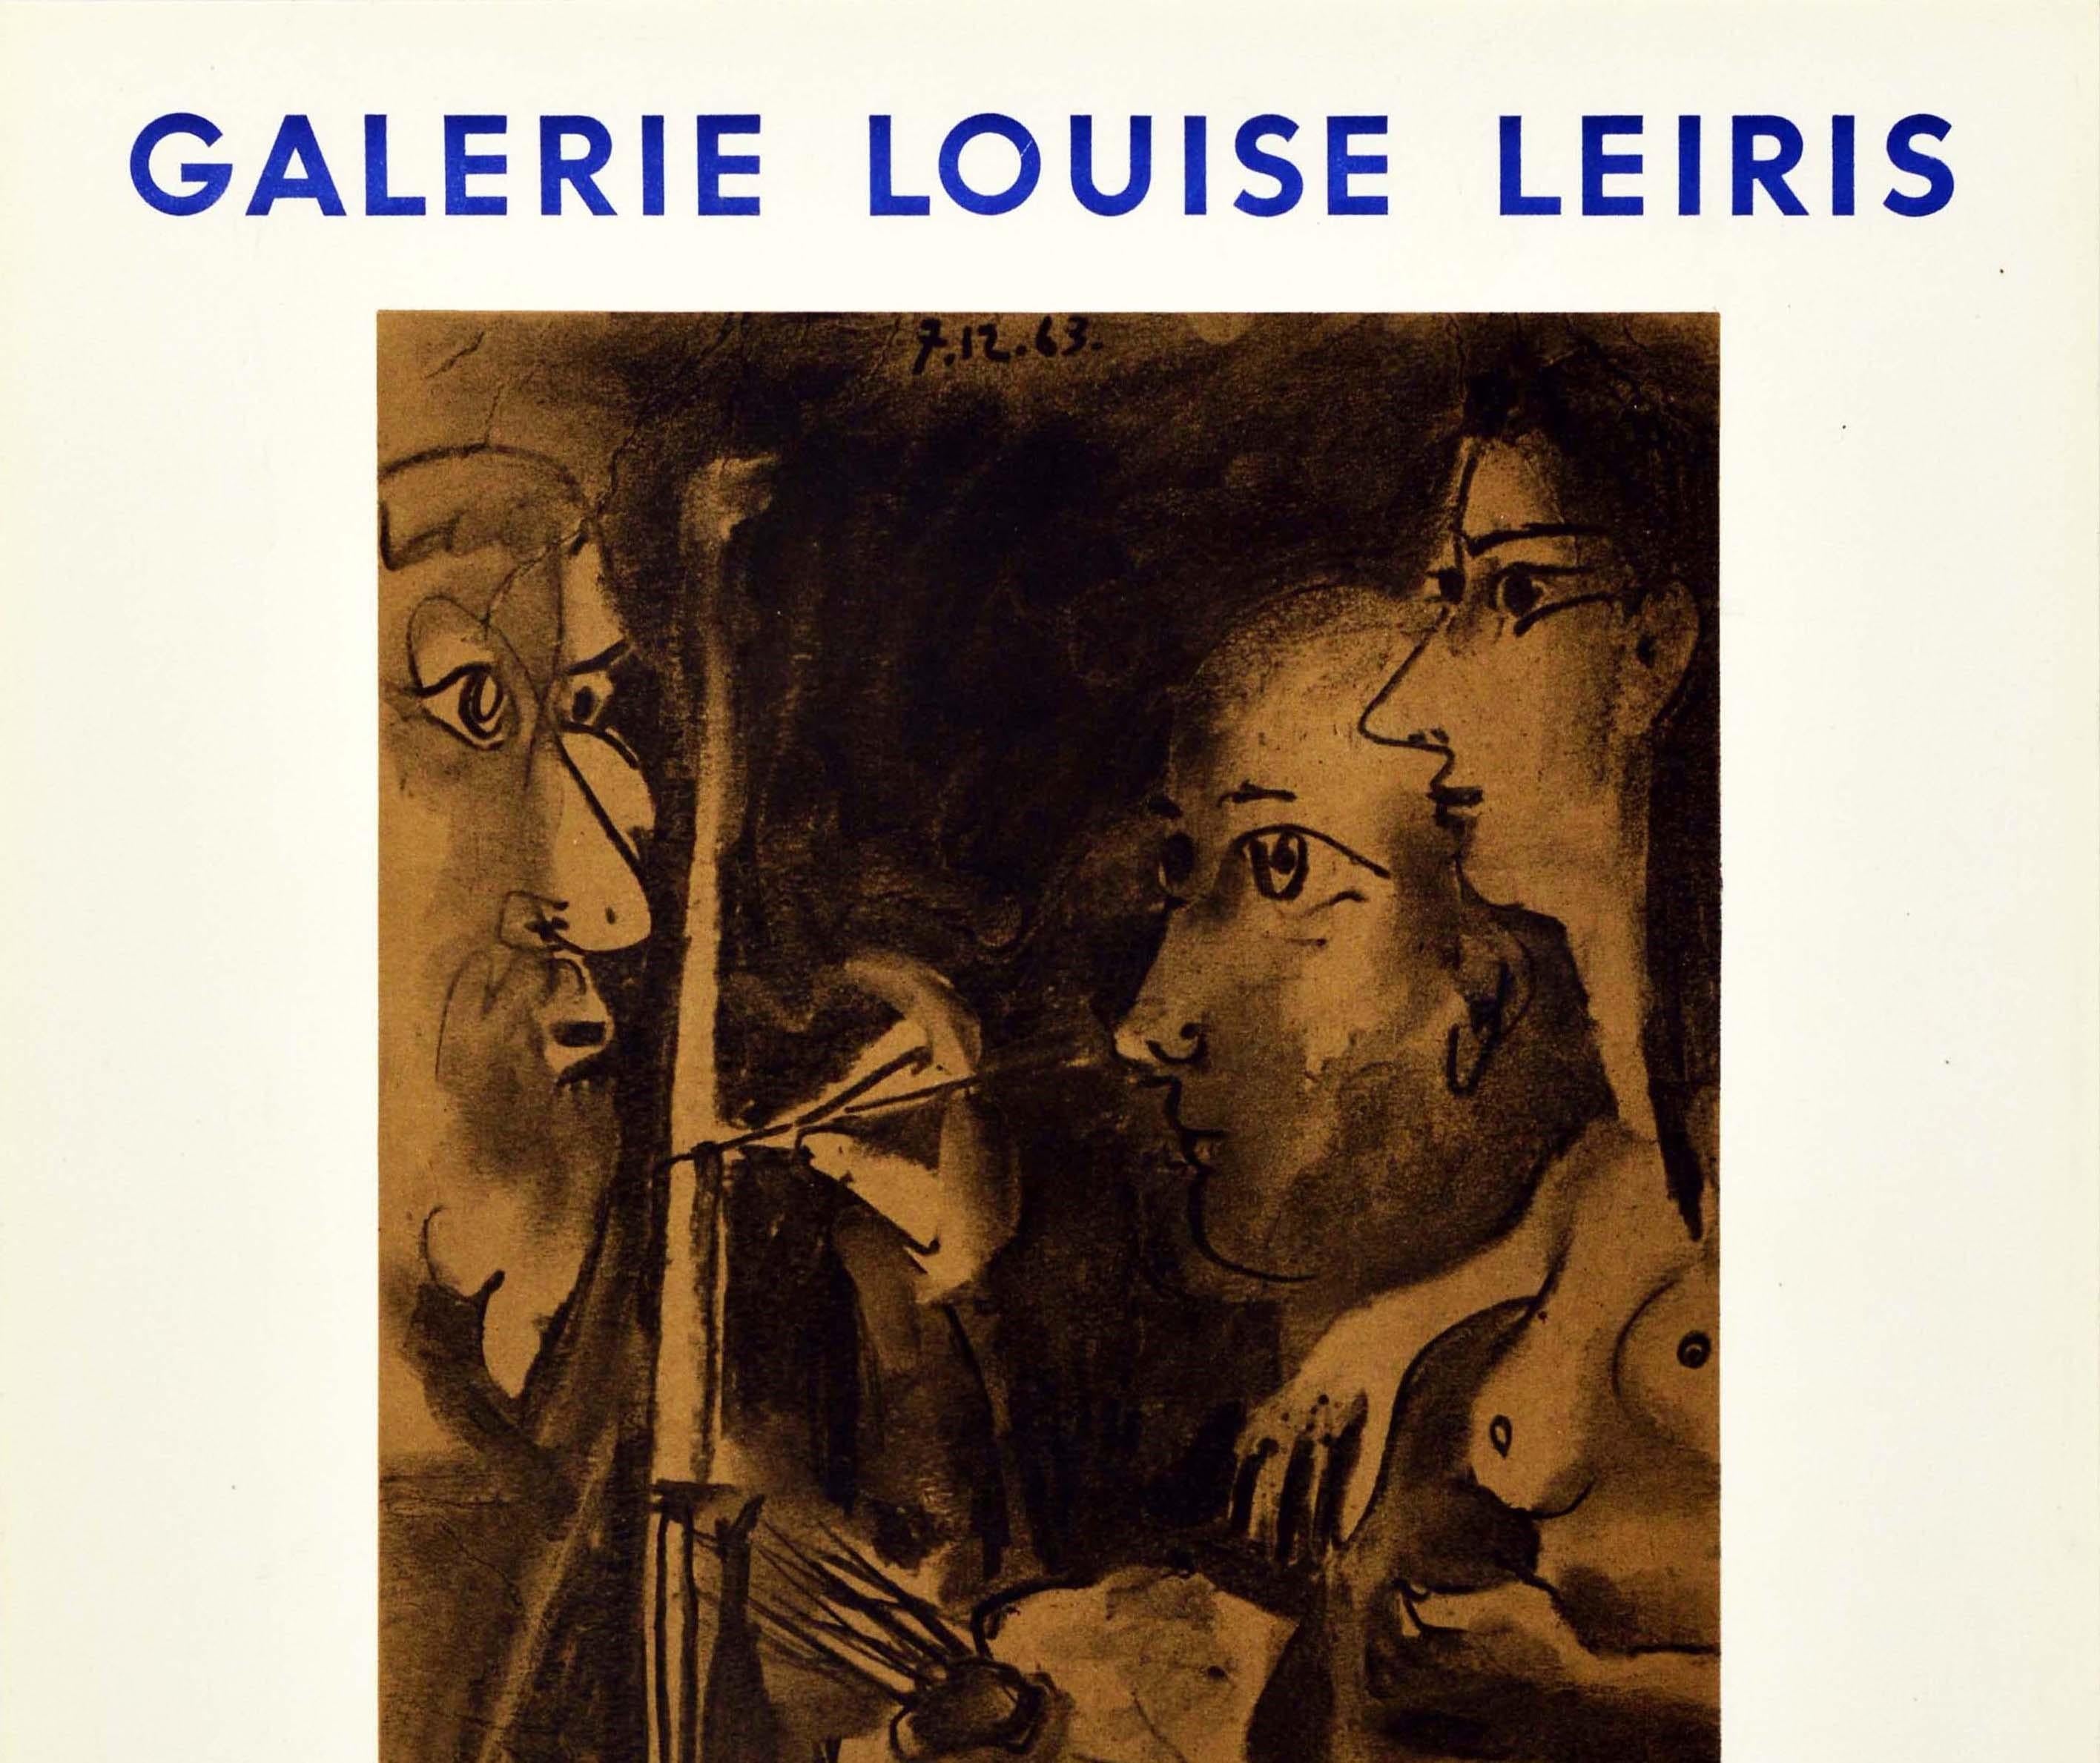 Original-Werbeplakat für Picasso Peintures 1962-1963, eine Ausstellung von Gemälden des bedeutenden spanischen Künstlers und Bildhauers Pablo Picasso (1881-1973), die vom 15. Januar bis zum 15. Februar 1964 in der Galerie Louise Leiris in Paris